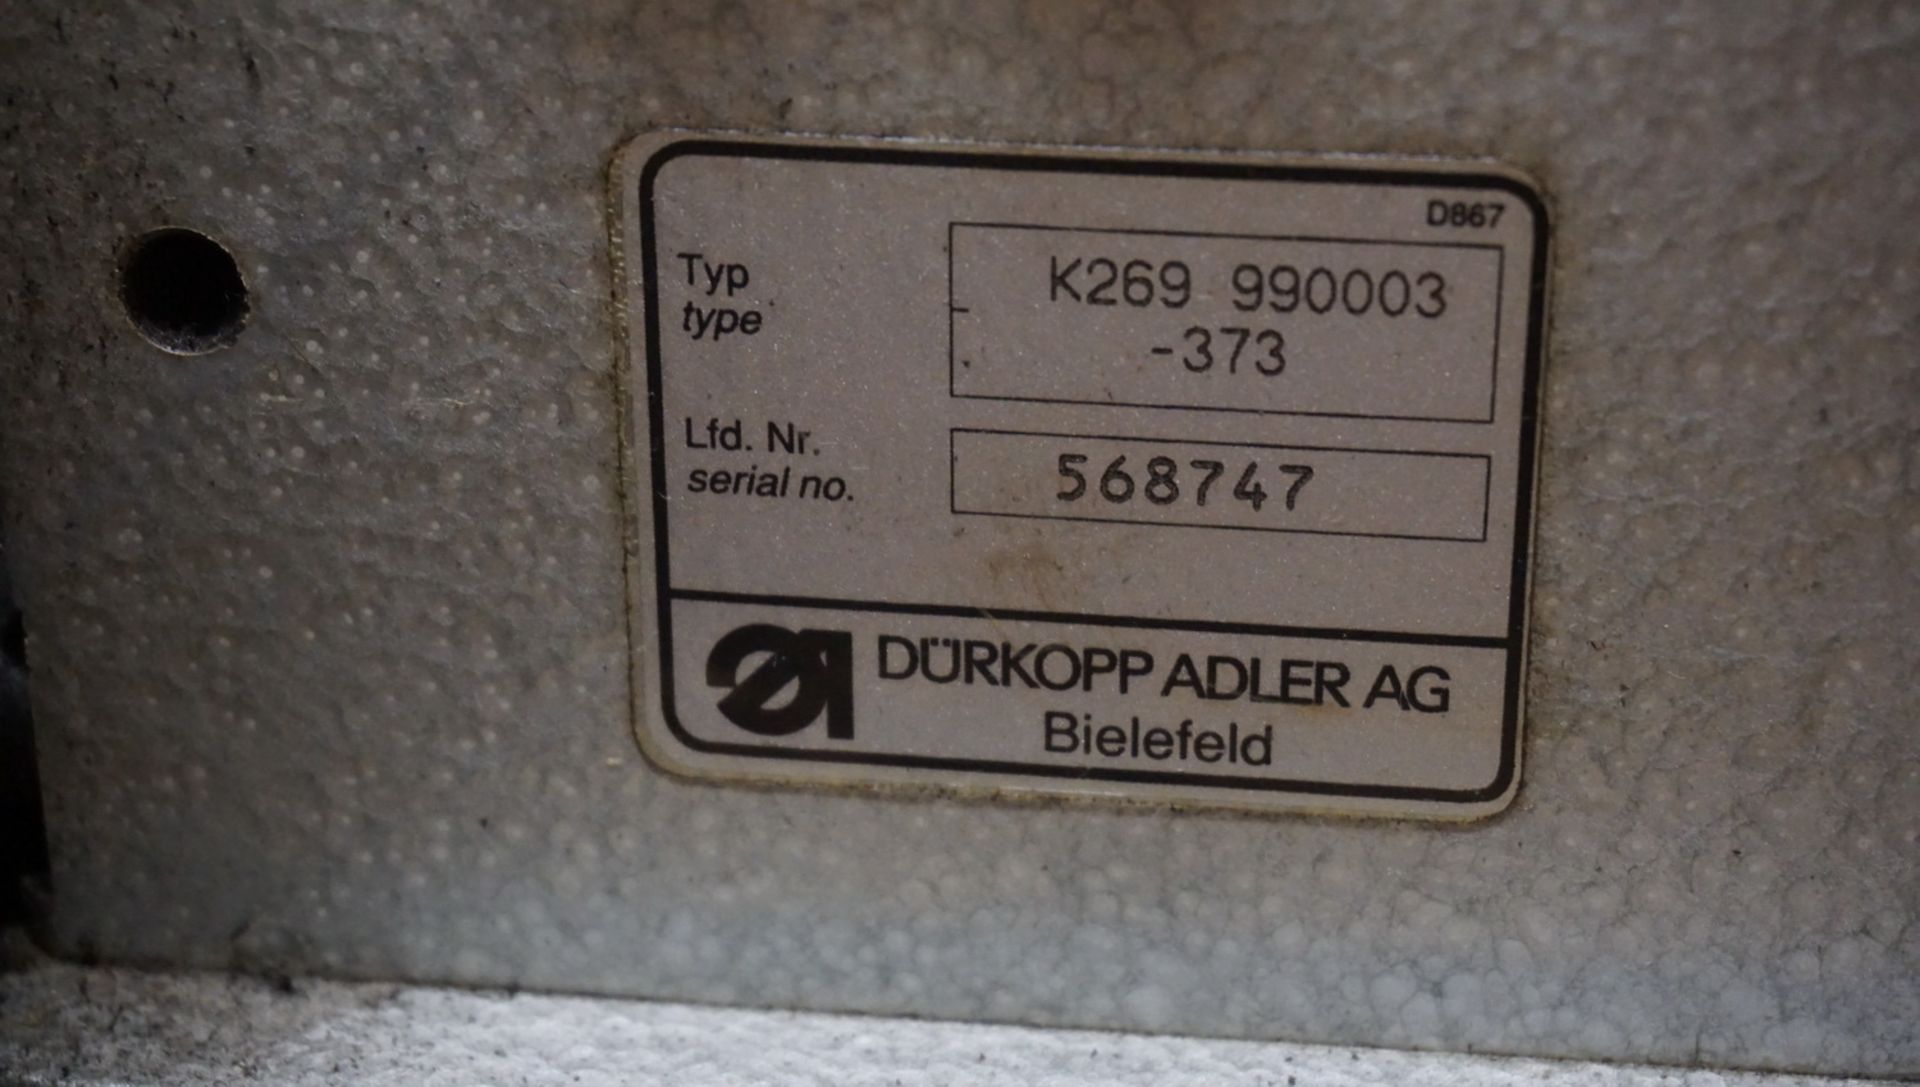 DURKOPP ADLER K269-90003-373 CYLINDER ARM WALKING FOOT SEWING MACHINE, S/N 568747 (110V) - Image 4 of 4